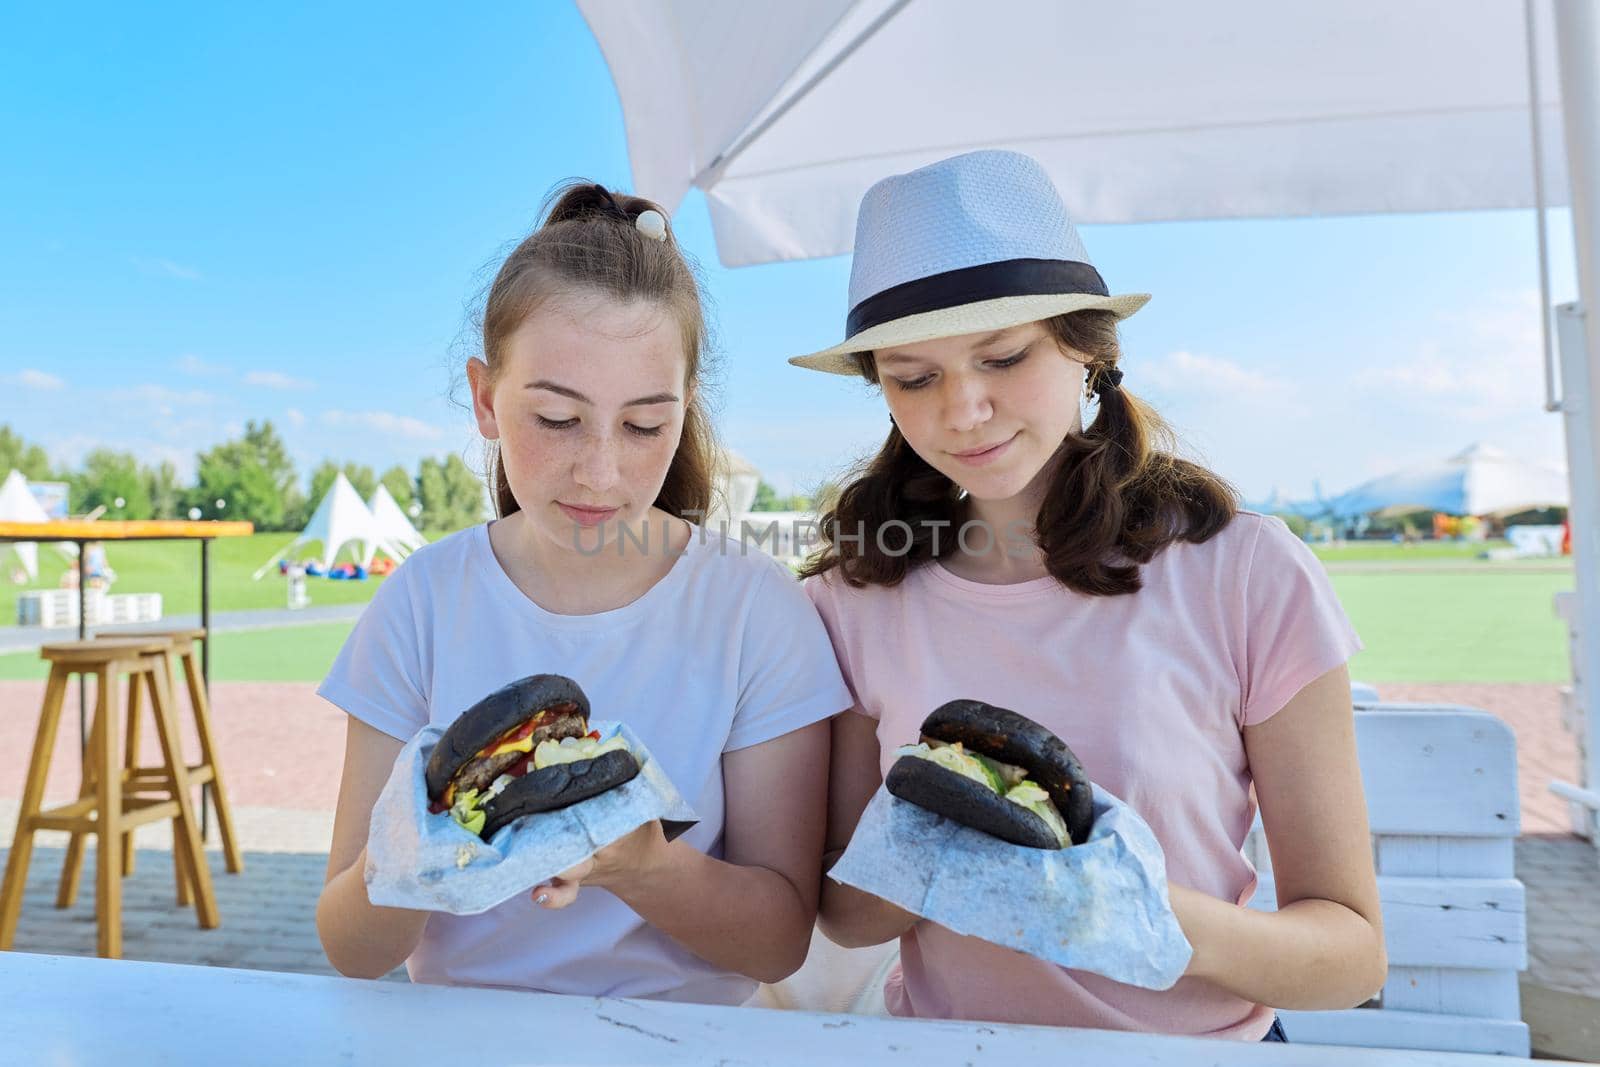 Teens two girls friends eating black burgers fast food, street food.